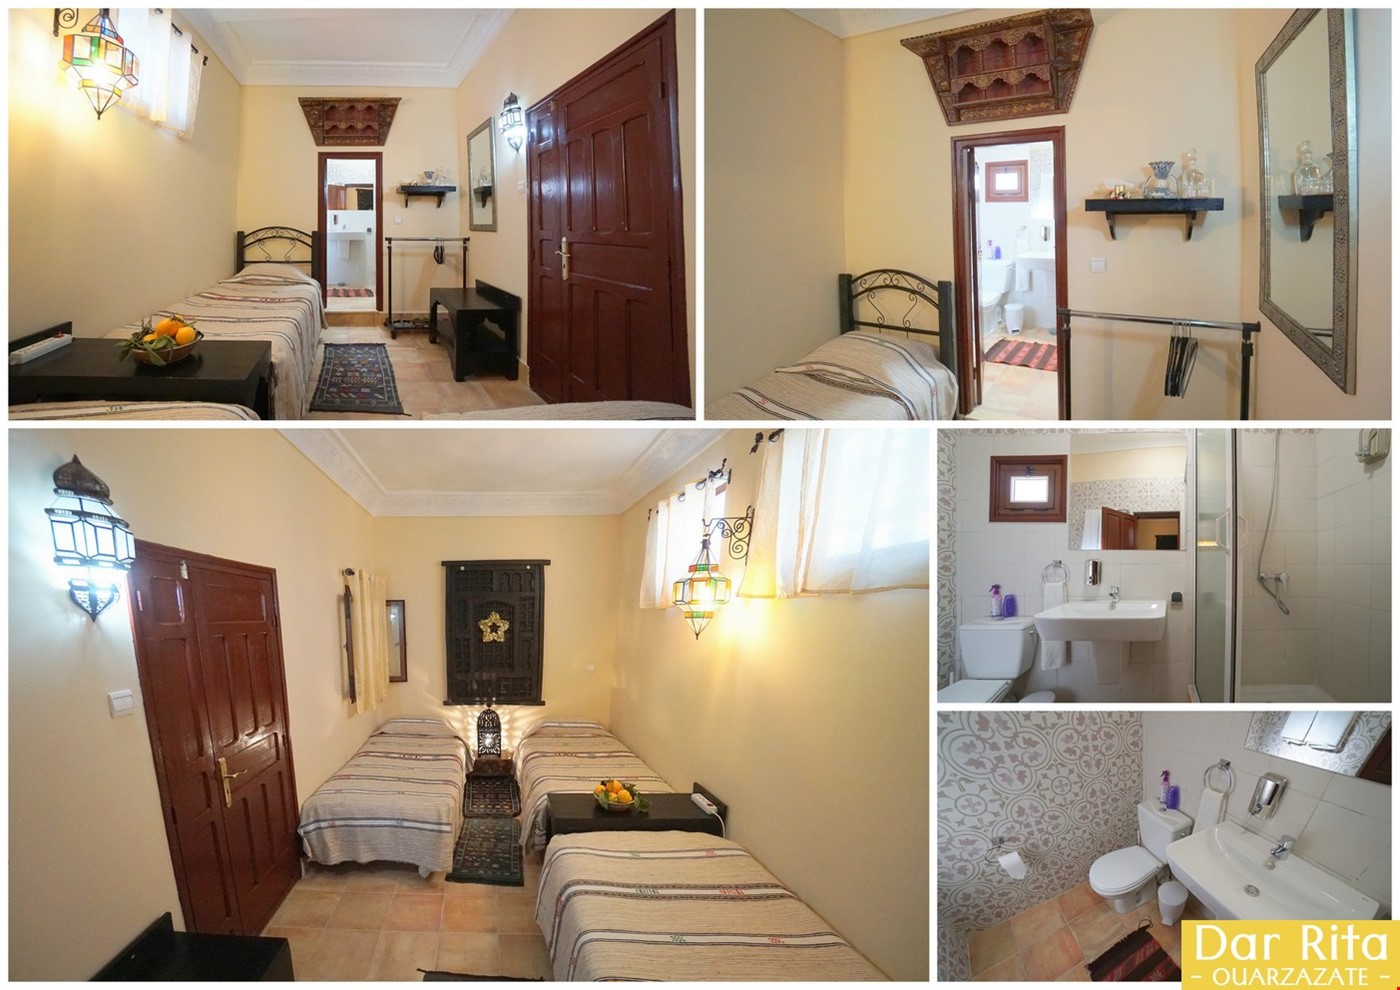 Hotel Ouarzazate Morocco nomad remote 0c13d0a4-da52-49bb-9e9d-fad129eca87a_double4.jpg